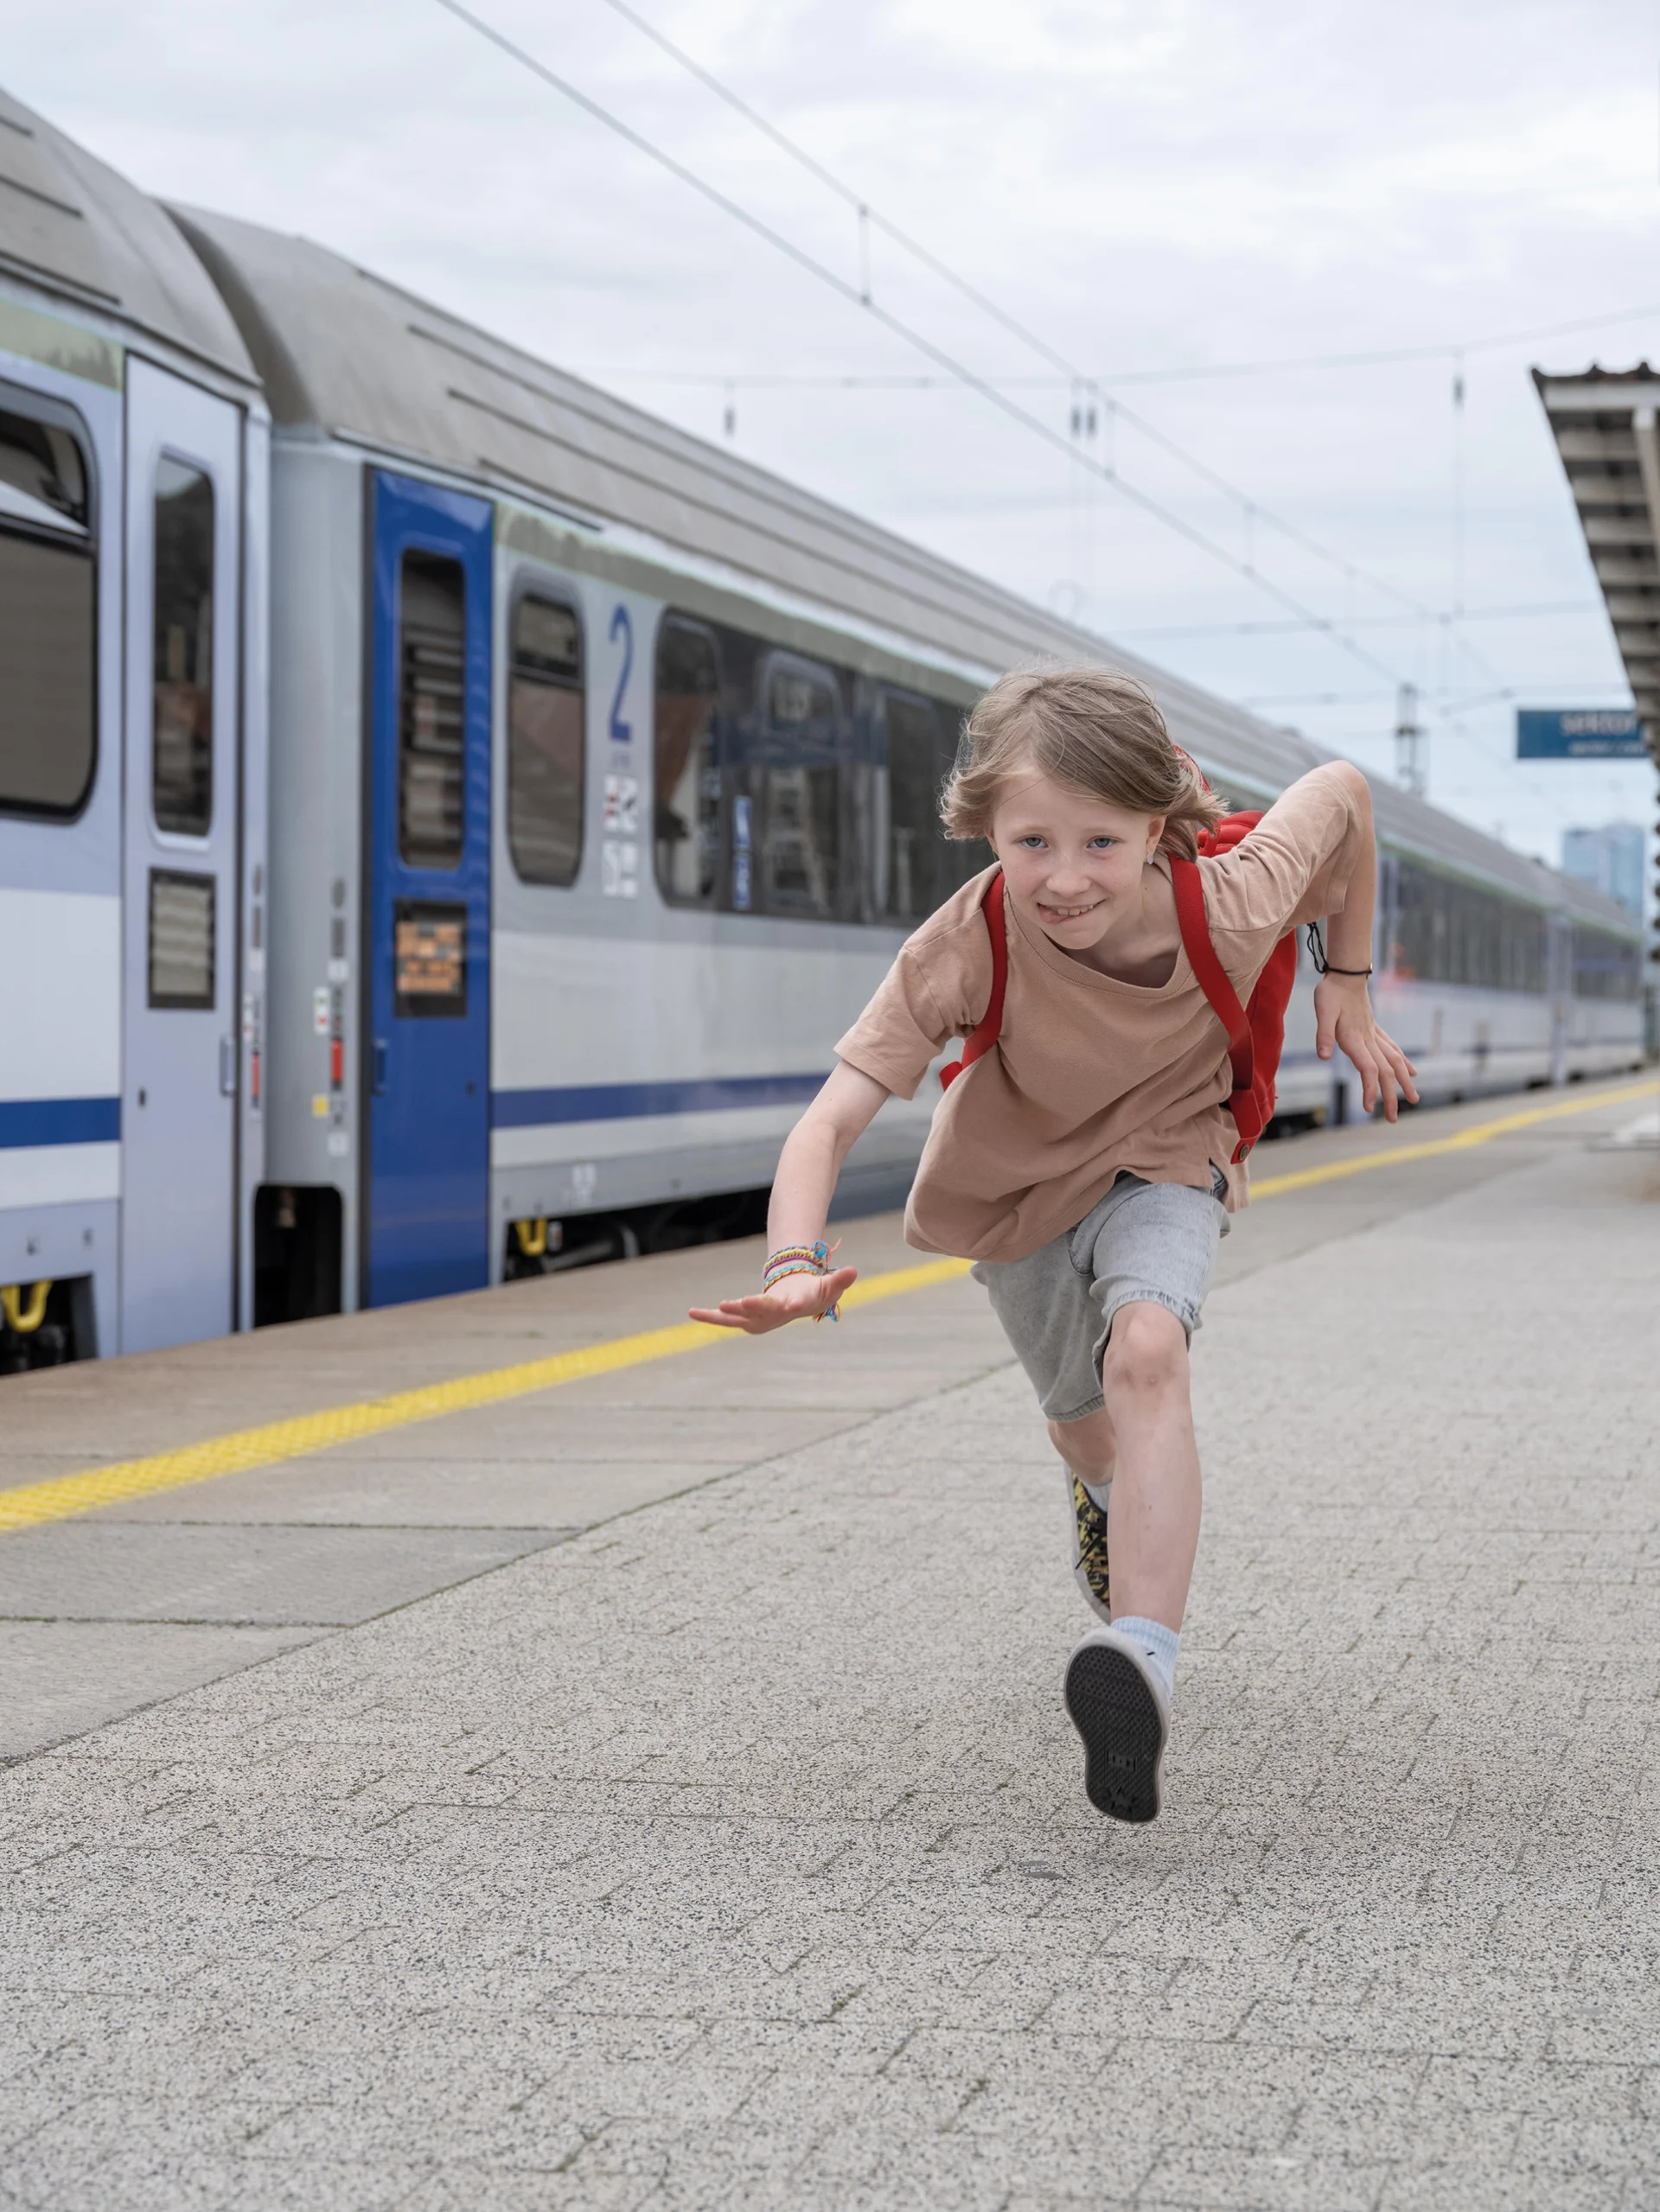 Dziewczynka z czerwonym plecakiem biegnie po peronie kolejowym. W tle stojący pociąg.